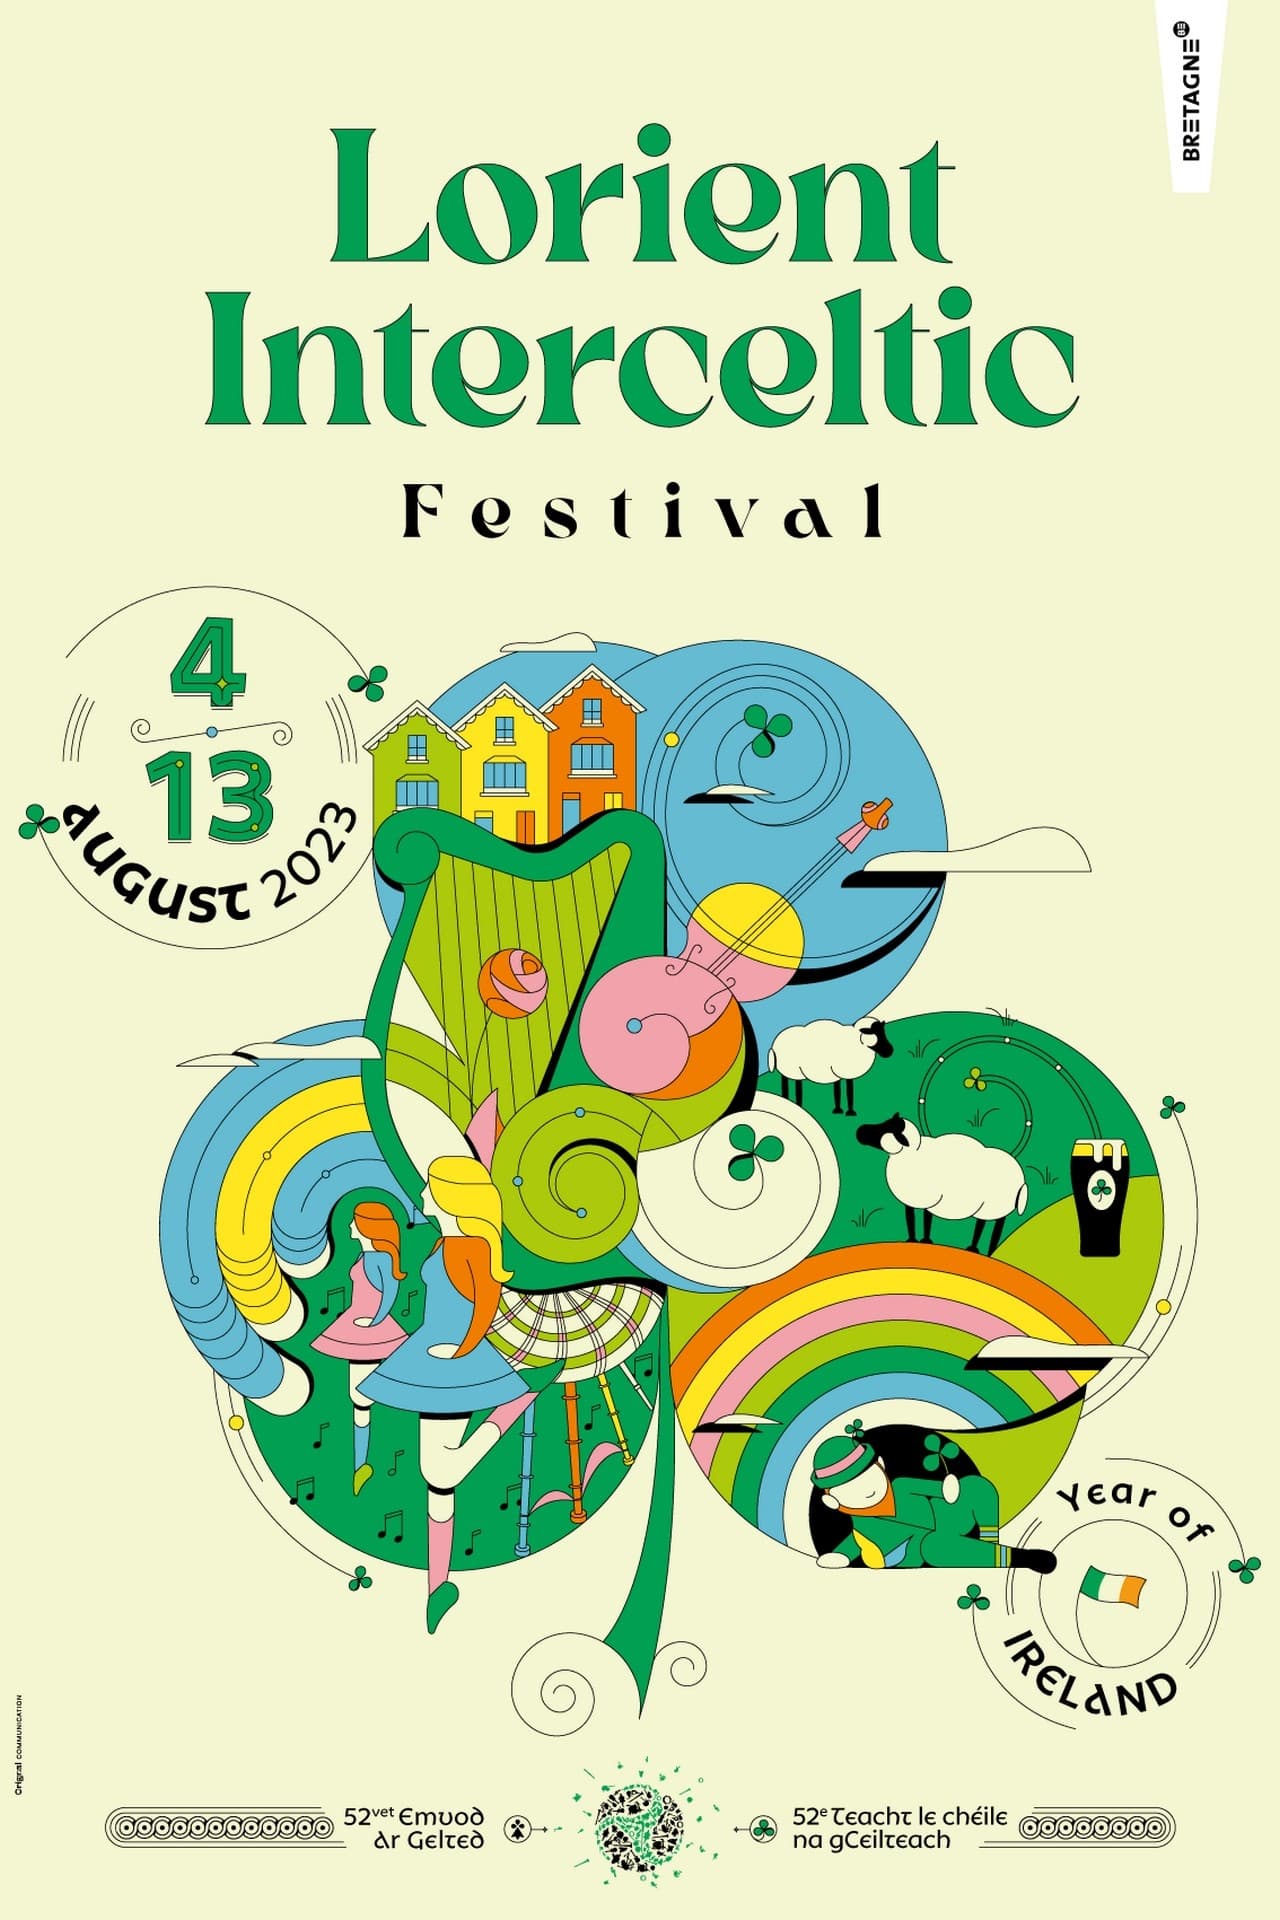 Festival Interceltique de Lorient - Le Grand Spectacle